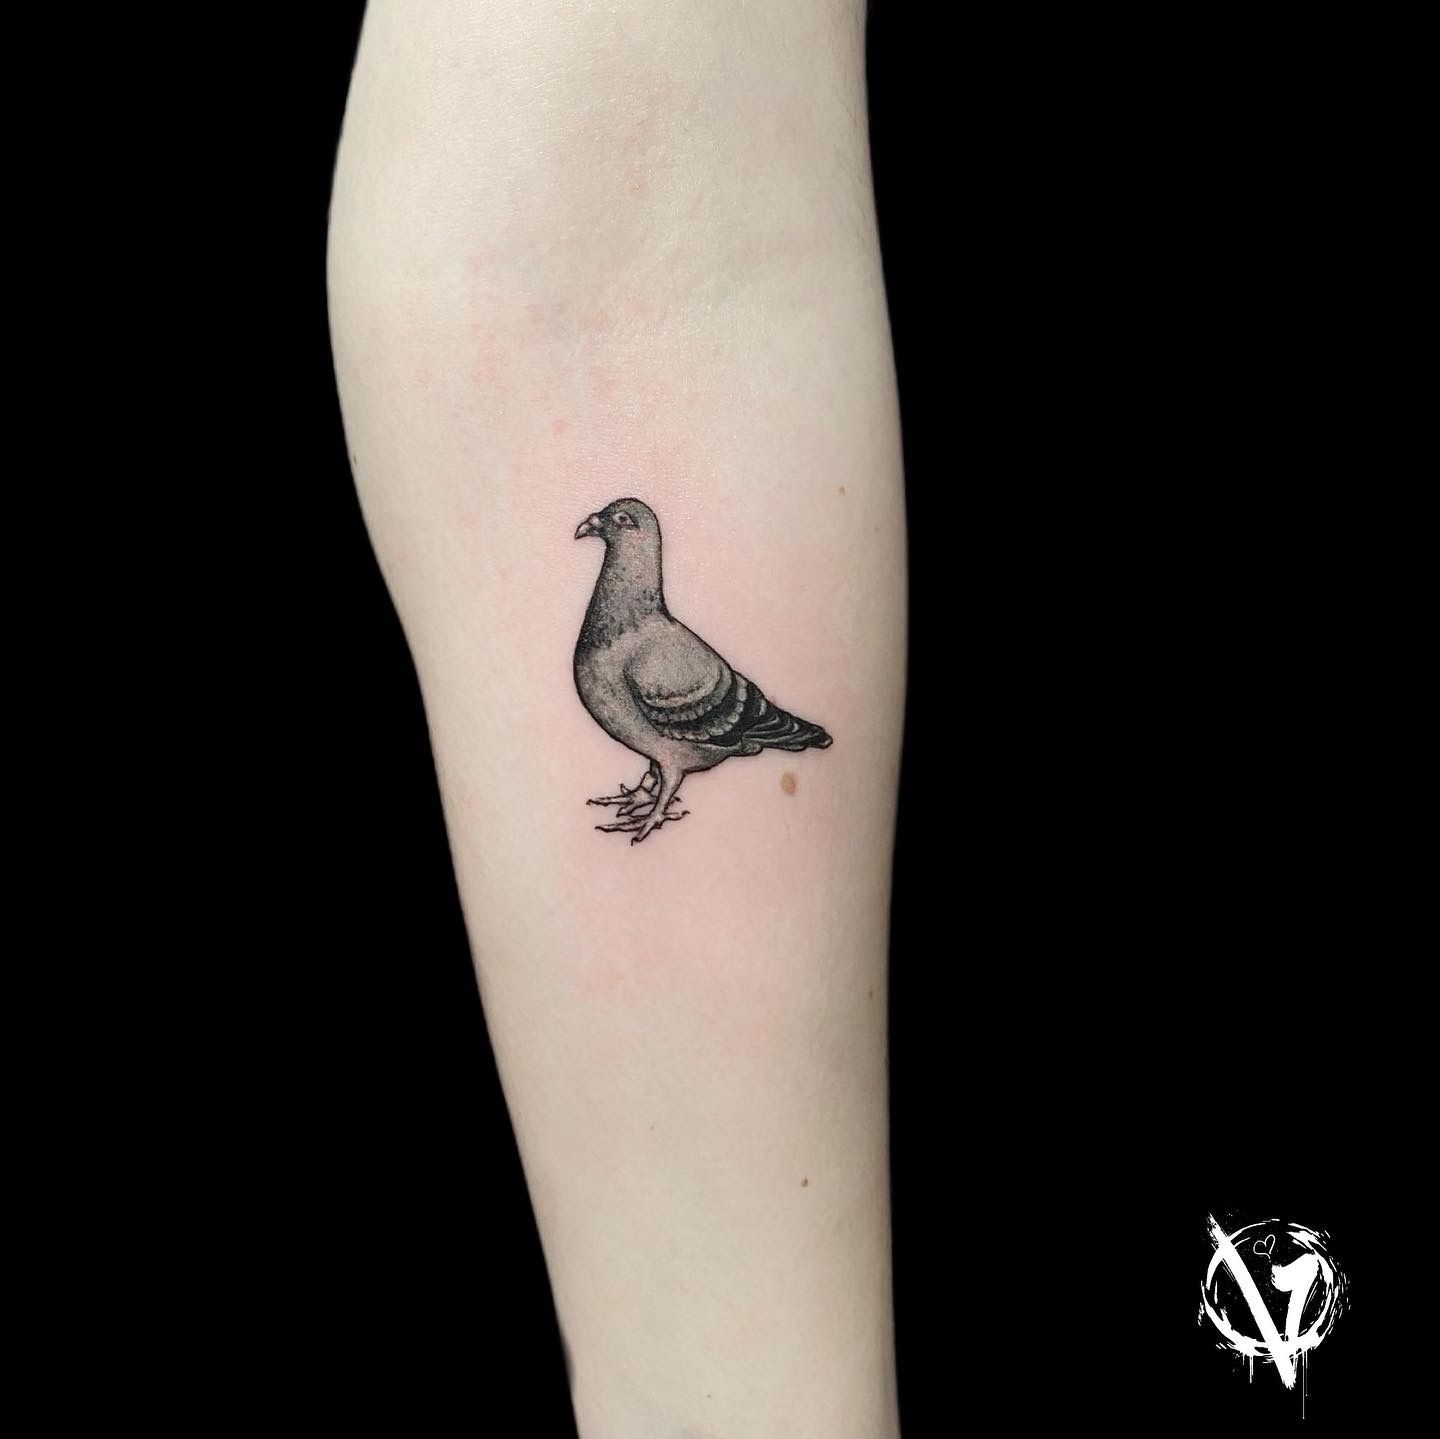 Rat Ridin' Pigeon tattoo @mattadamson at @threekingstattoo in Brooklyn, NY  | Instagram